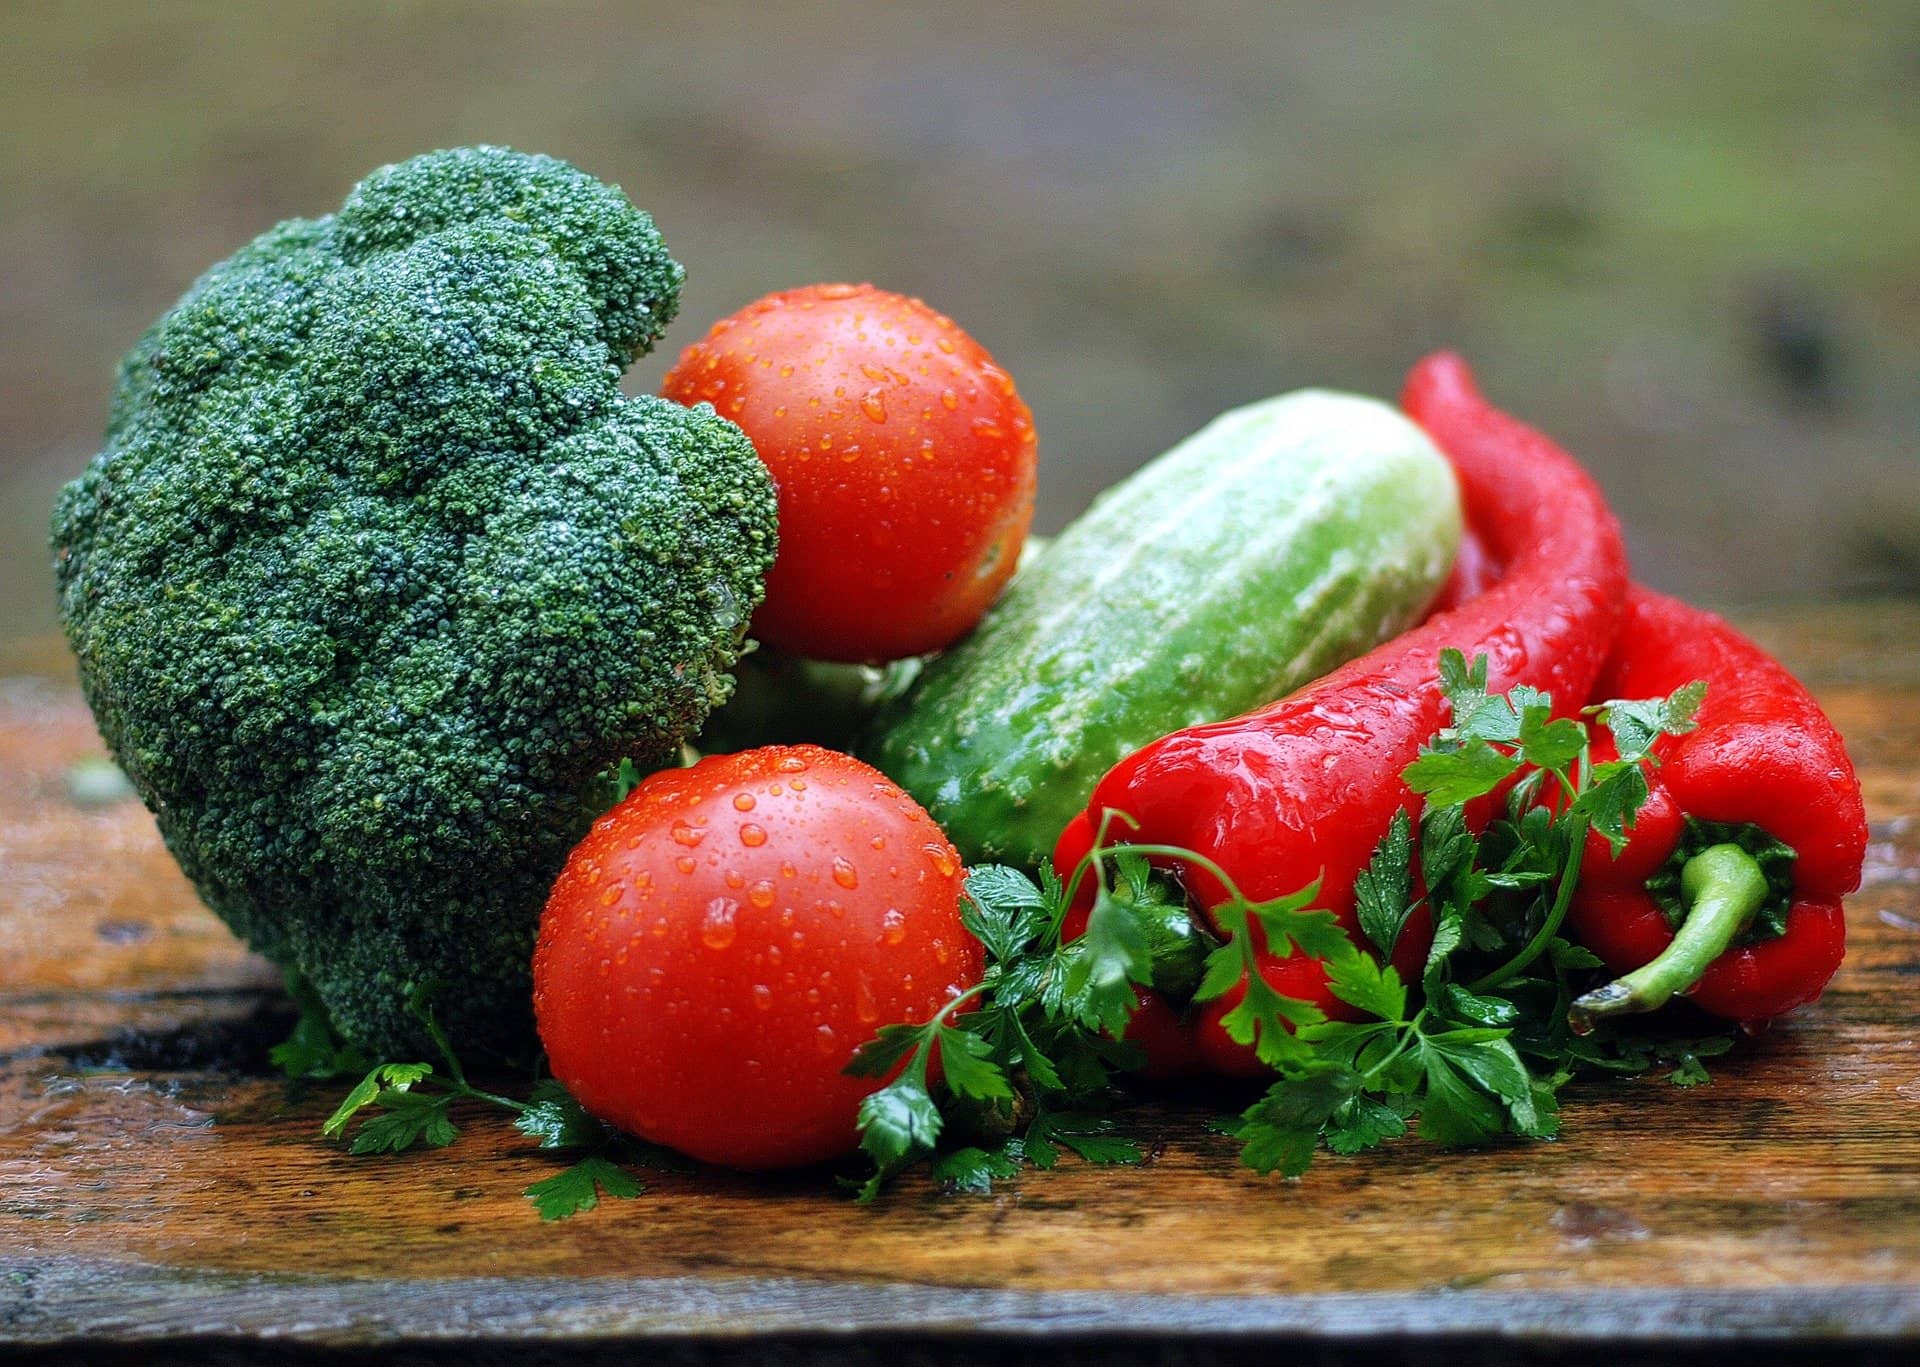 緑と赤の野菜がたくさん写った画像